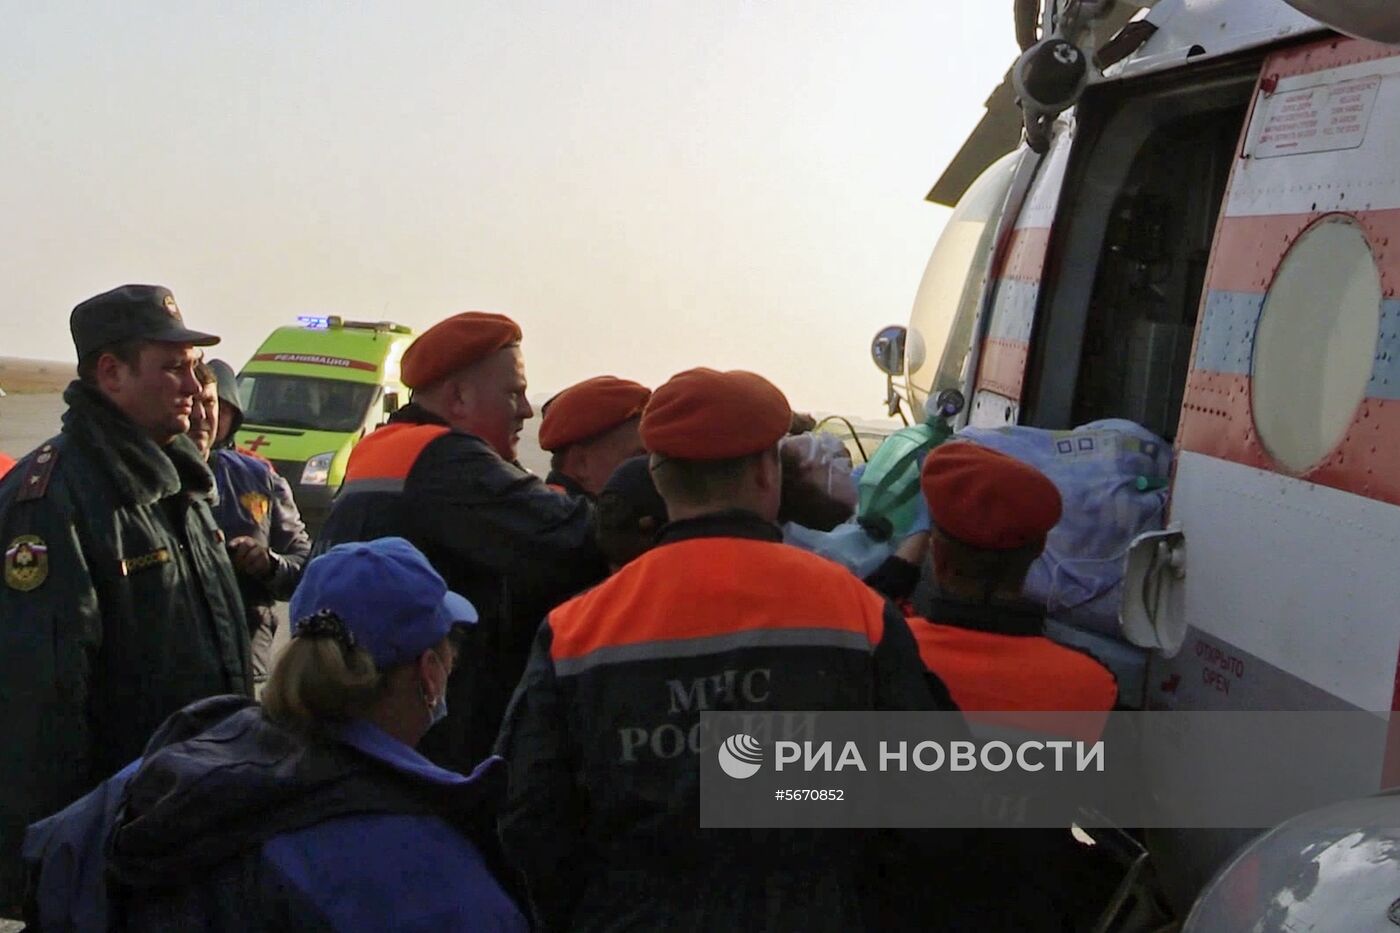 Вылет в Москву борта МЧС России с пострадавшими при нападении на колледж в Керчи